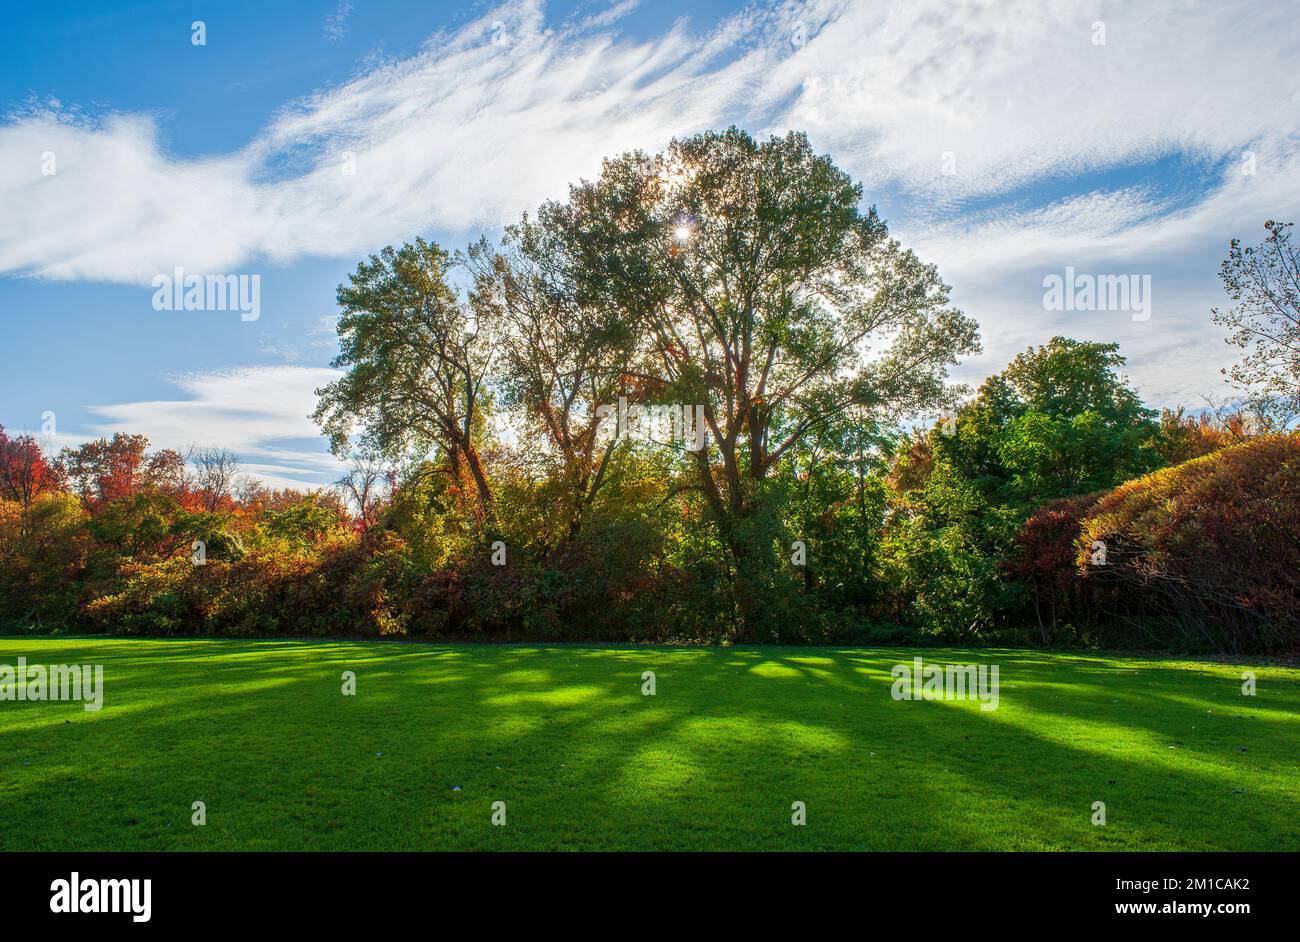 Le soleil brille à travers les arbres avec des feuilles d'automne colorées, dessinant des nuances sur un champ vert. Cold Spring Park, Newton, ma, États-Unis. Banque D'Images